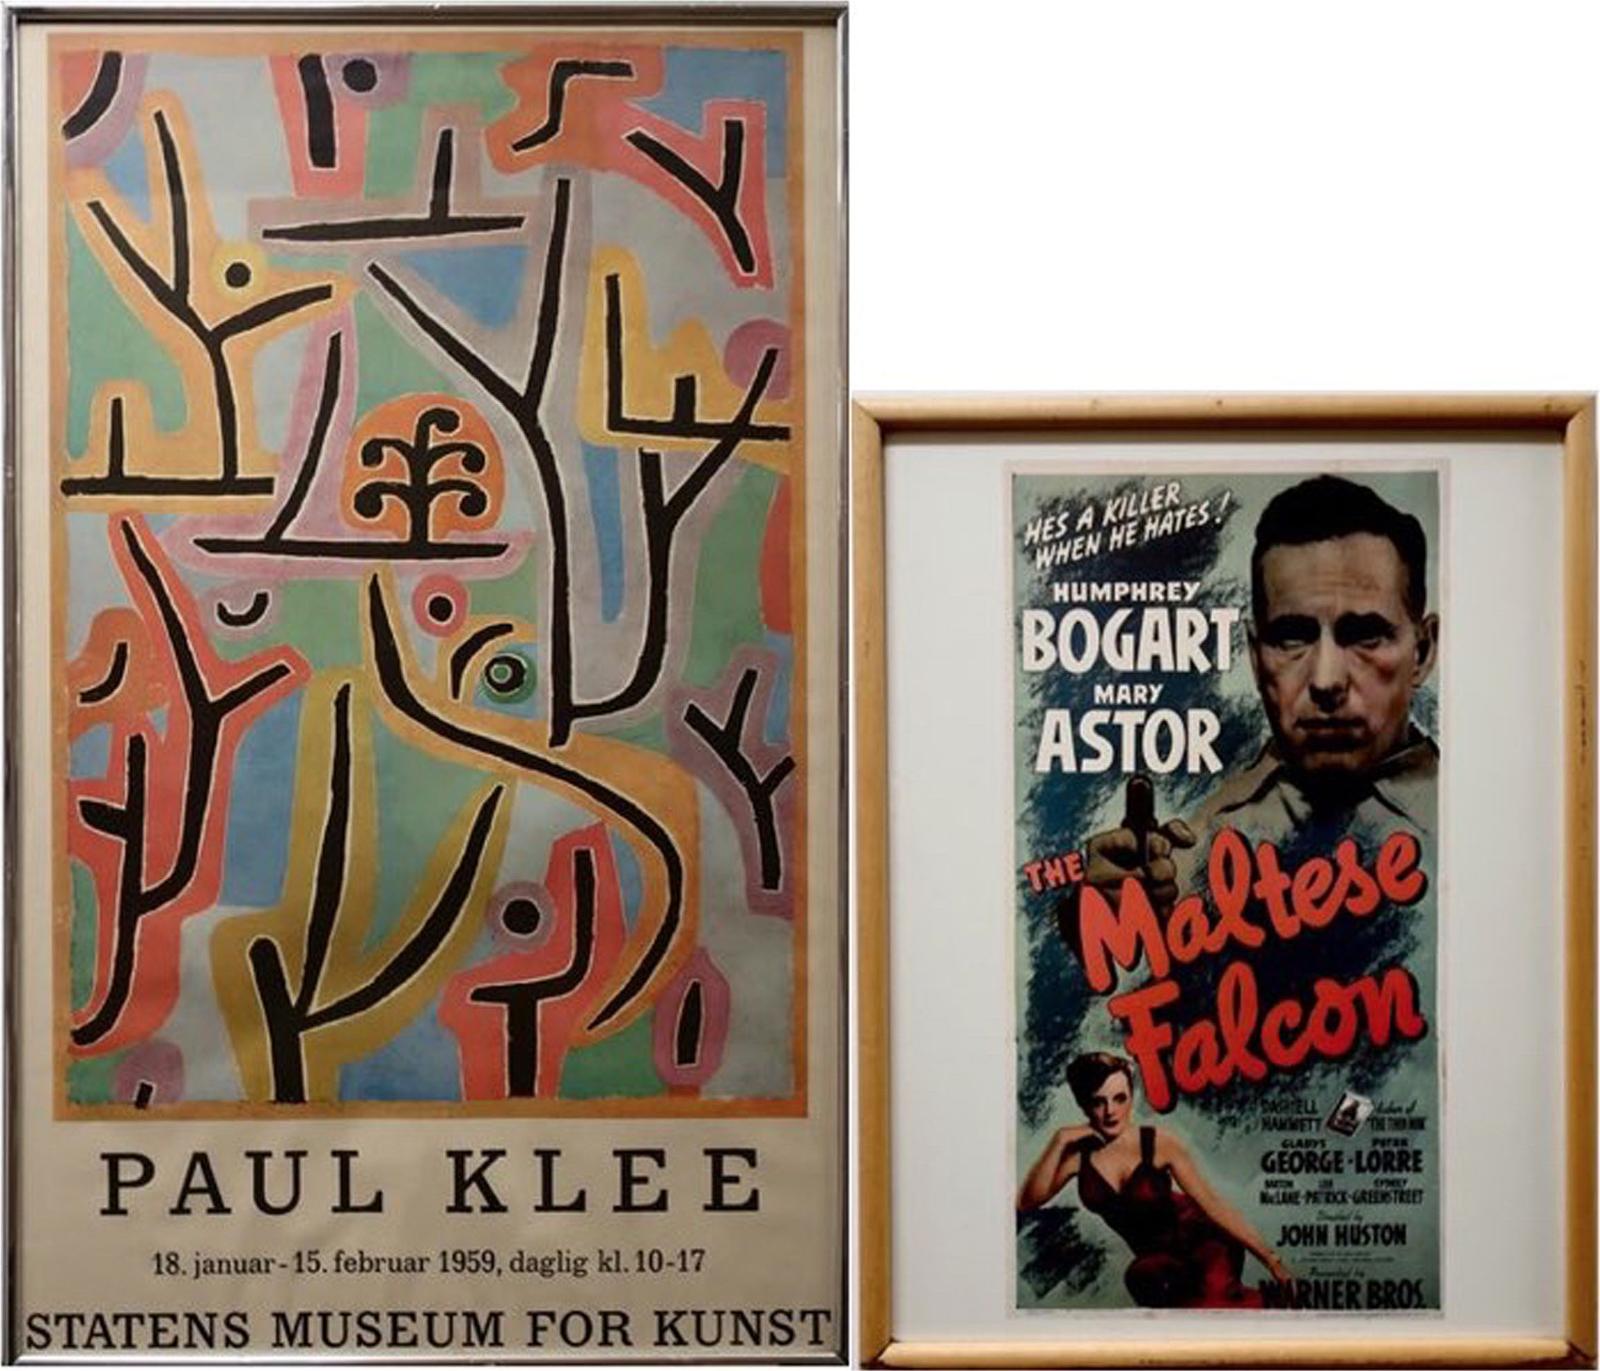 Paul Klee (1879-1940) - Paul Klee